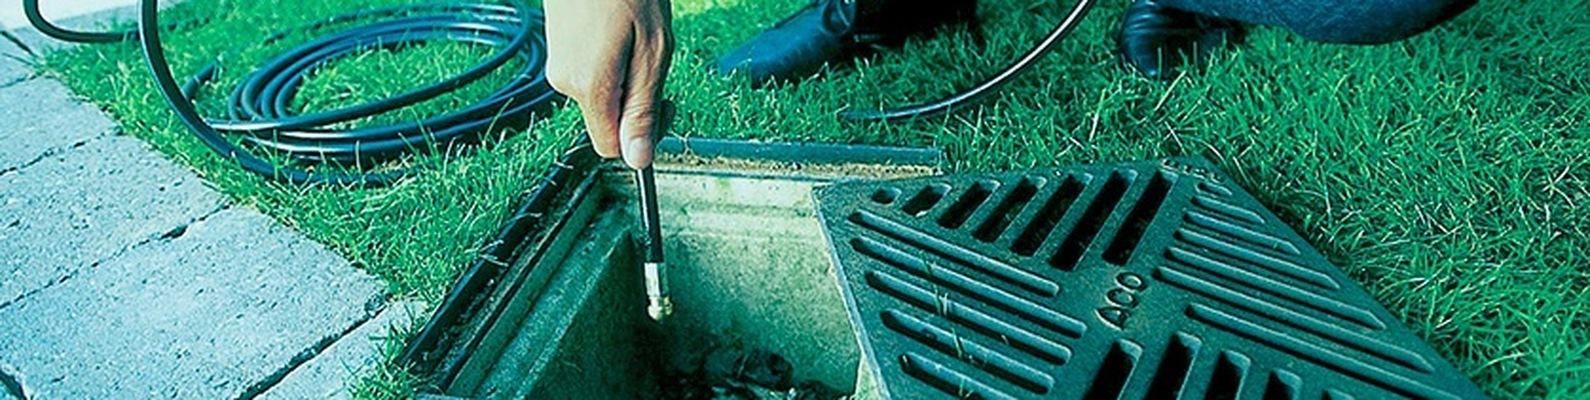 Технология прочистки ливневой канализации